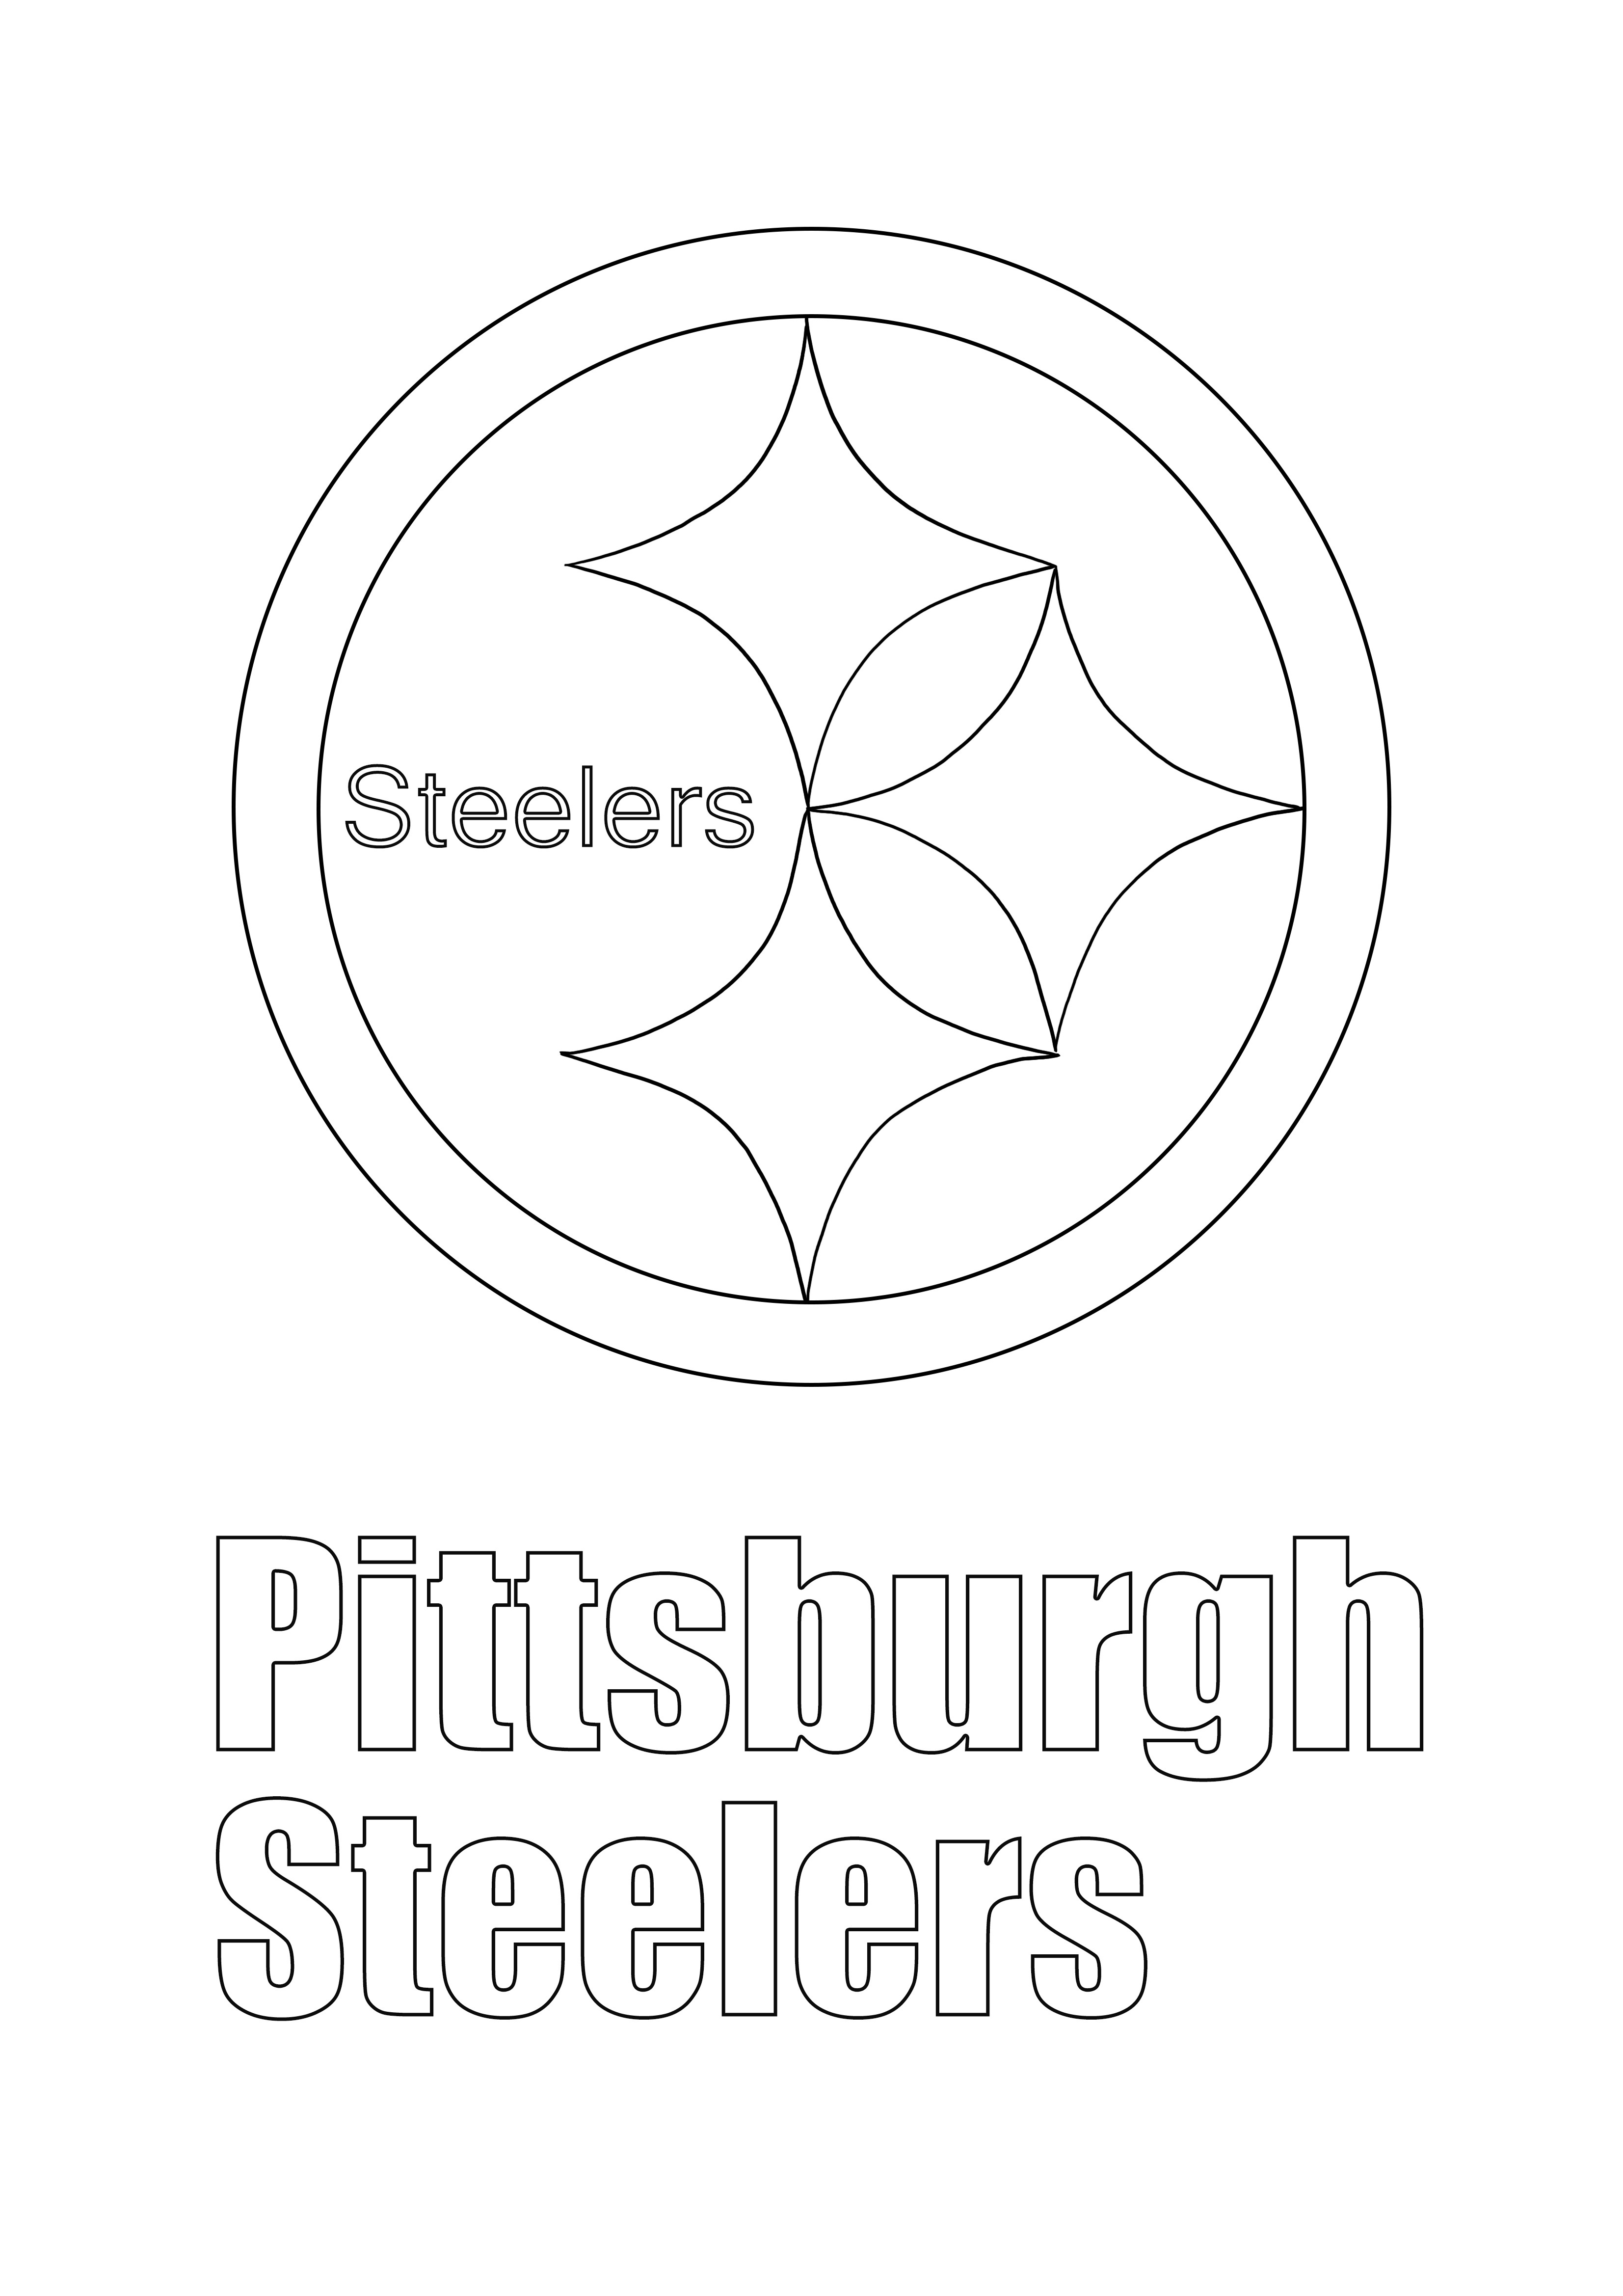 Pittsburgh Steelers Logo Einfache Malvorlage zum kostenlosen Ausdrucken oder Speichern für später